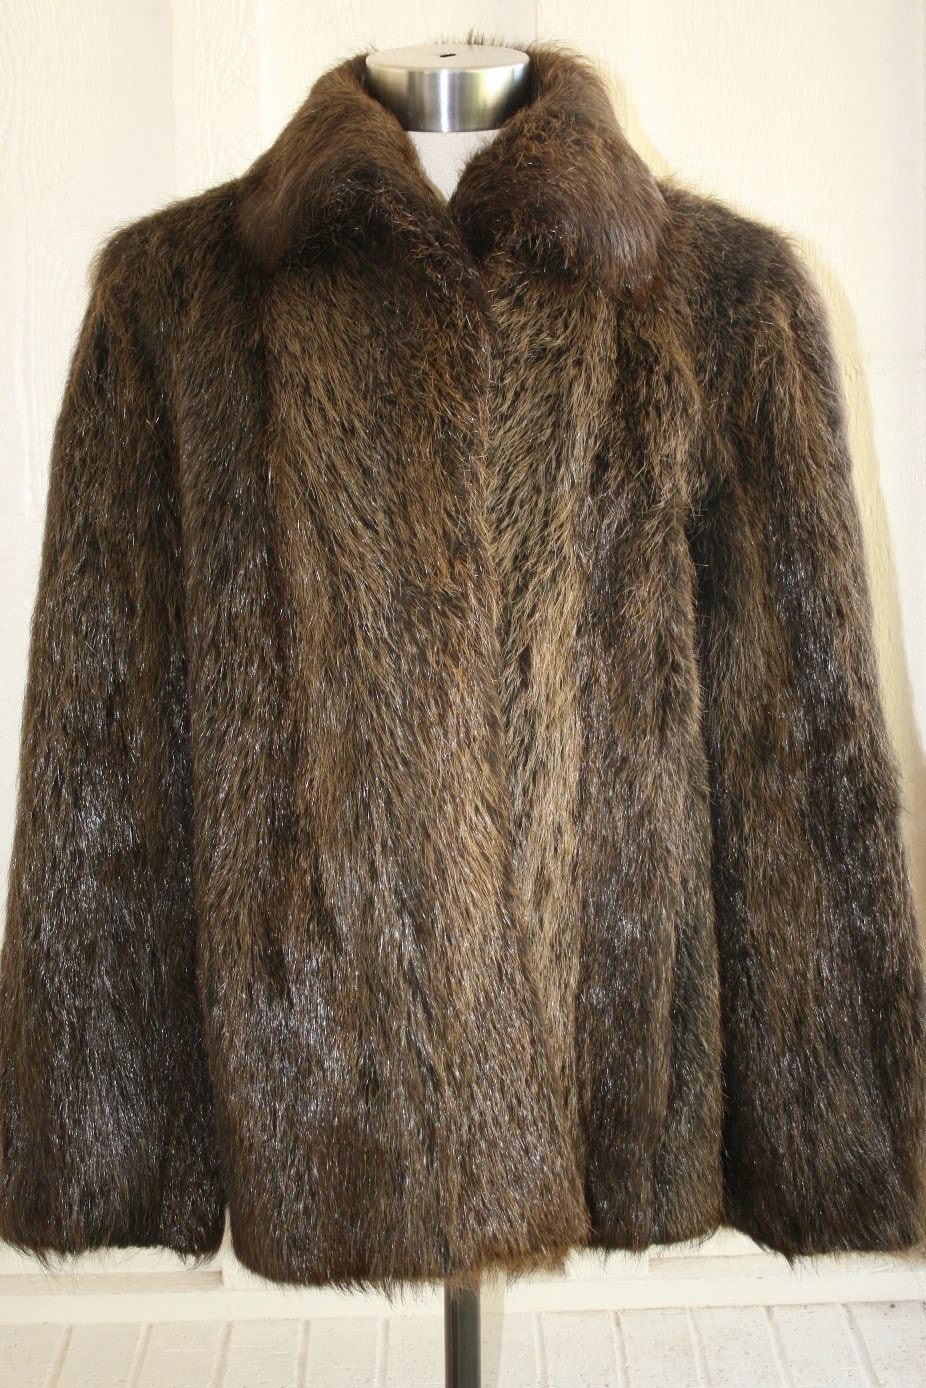 The Lovie Howell Nutria Fur Coat Argentina Pair with